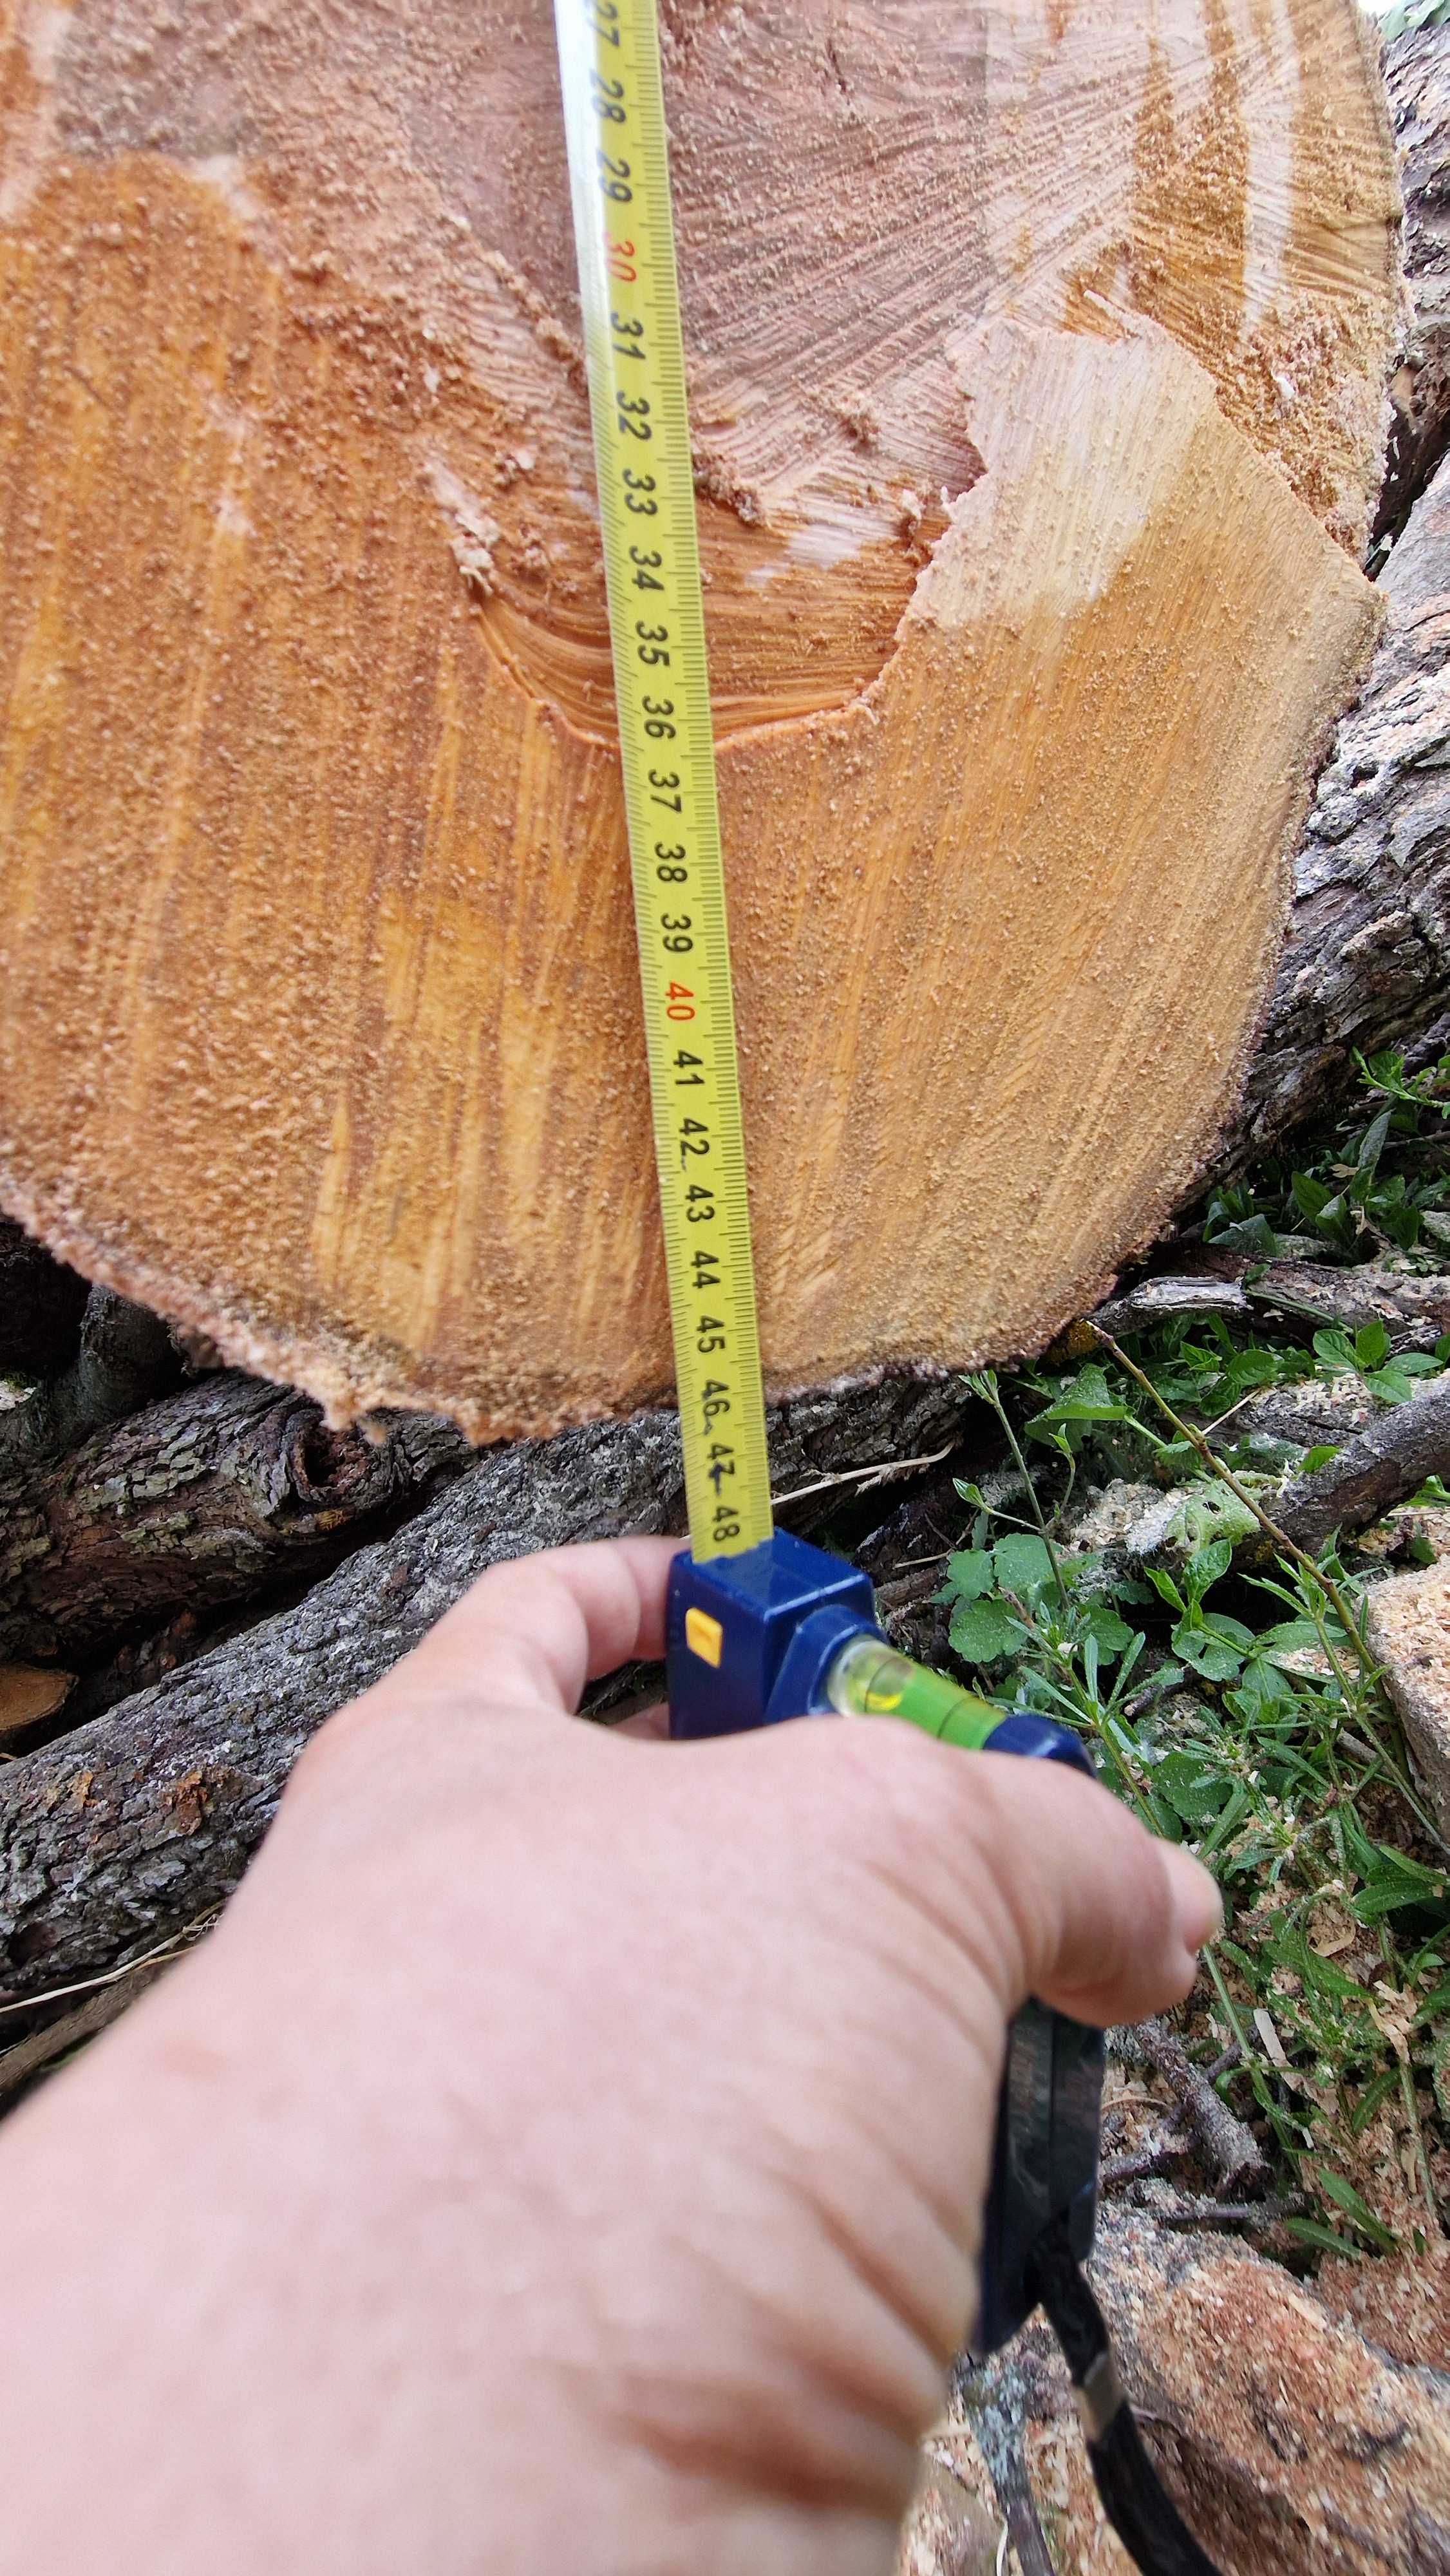 Дървен материал, дънер - круша